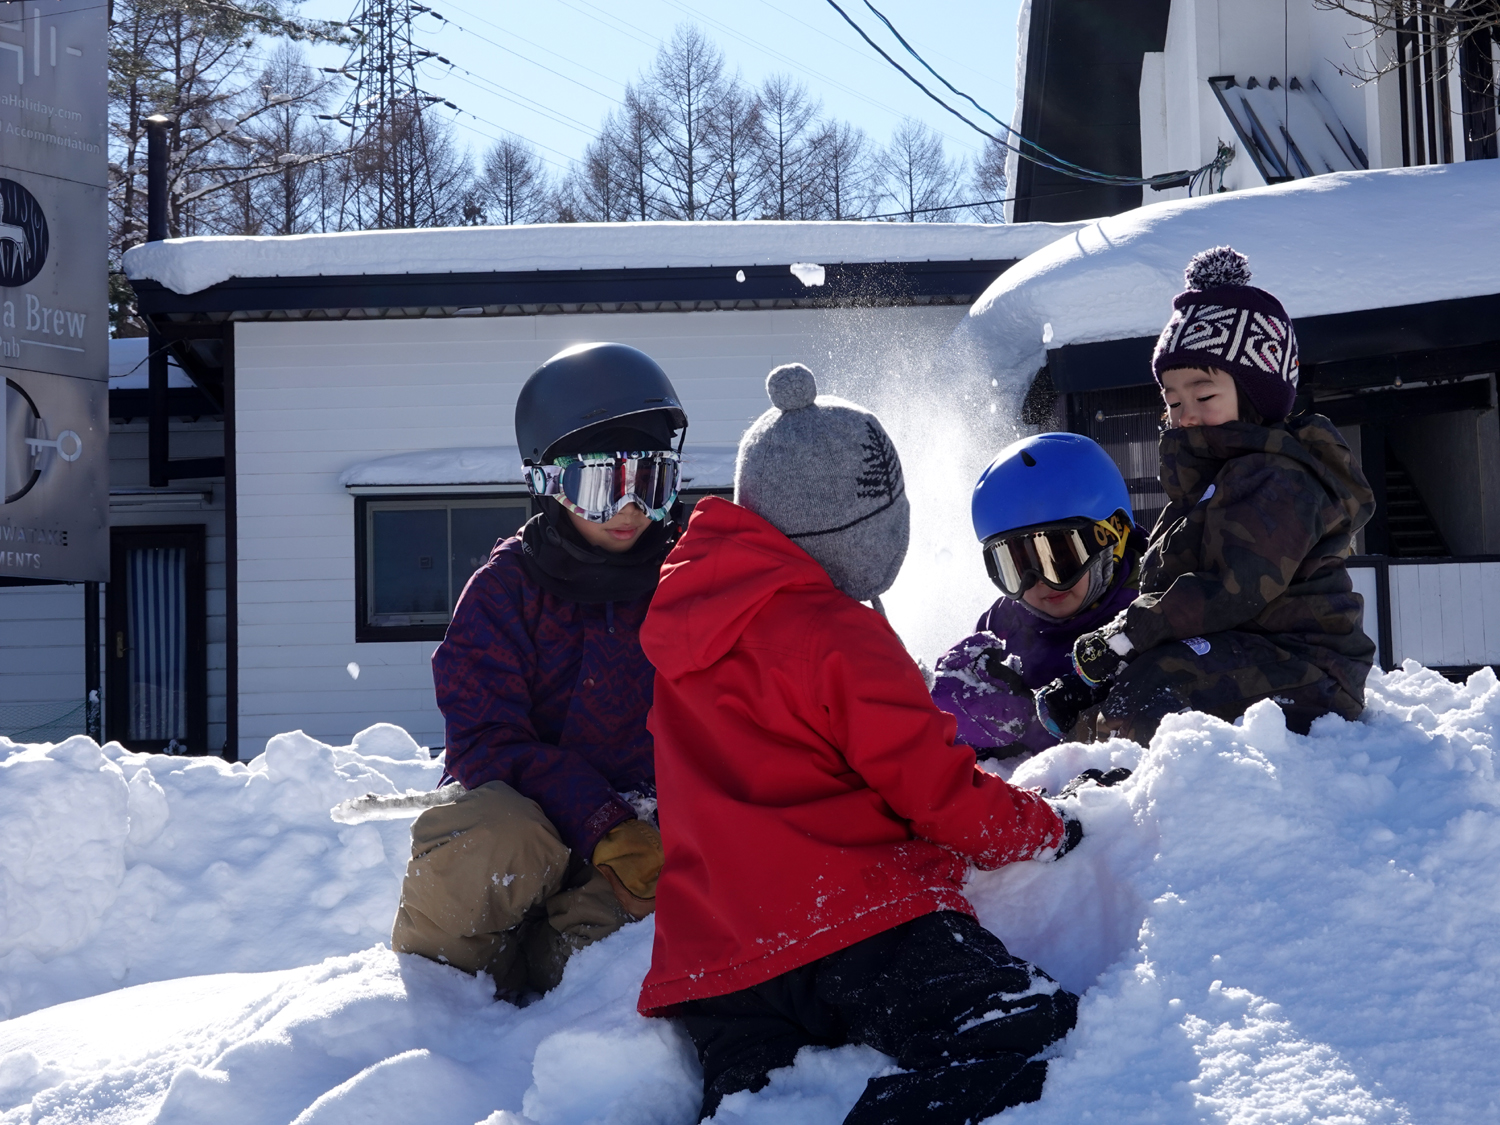 雪遊びをする子供たち